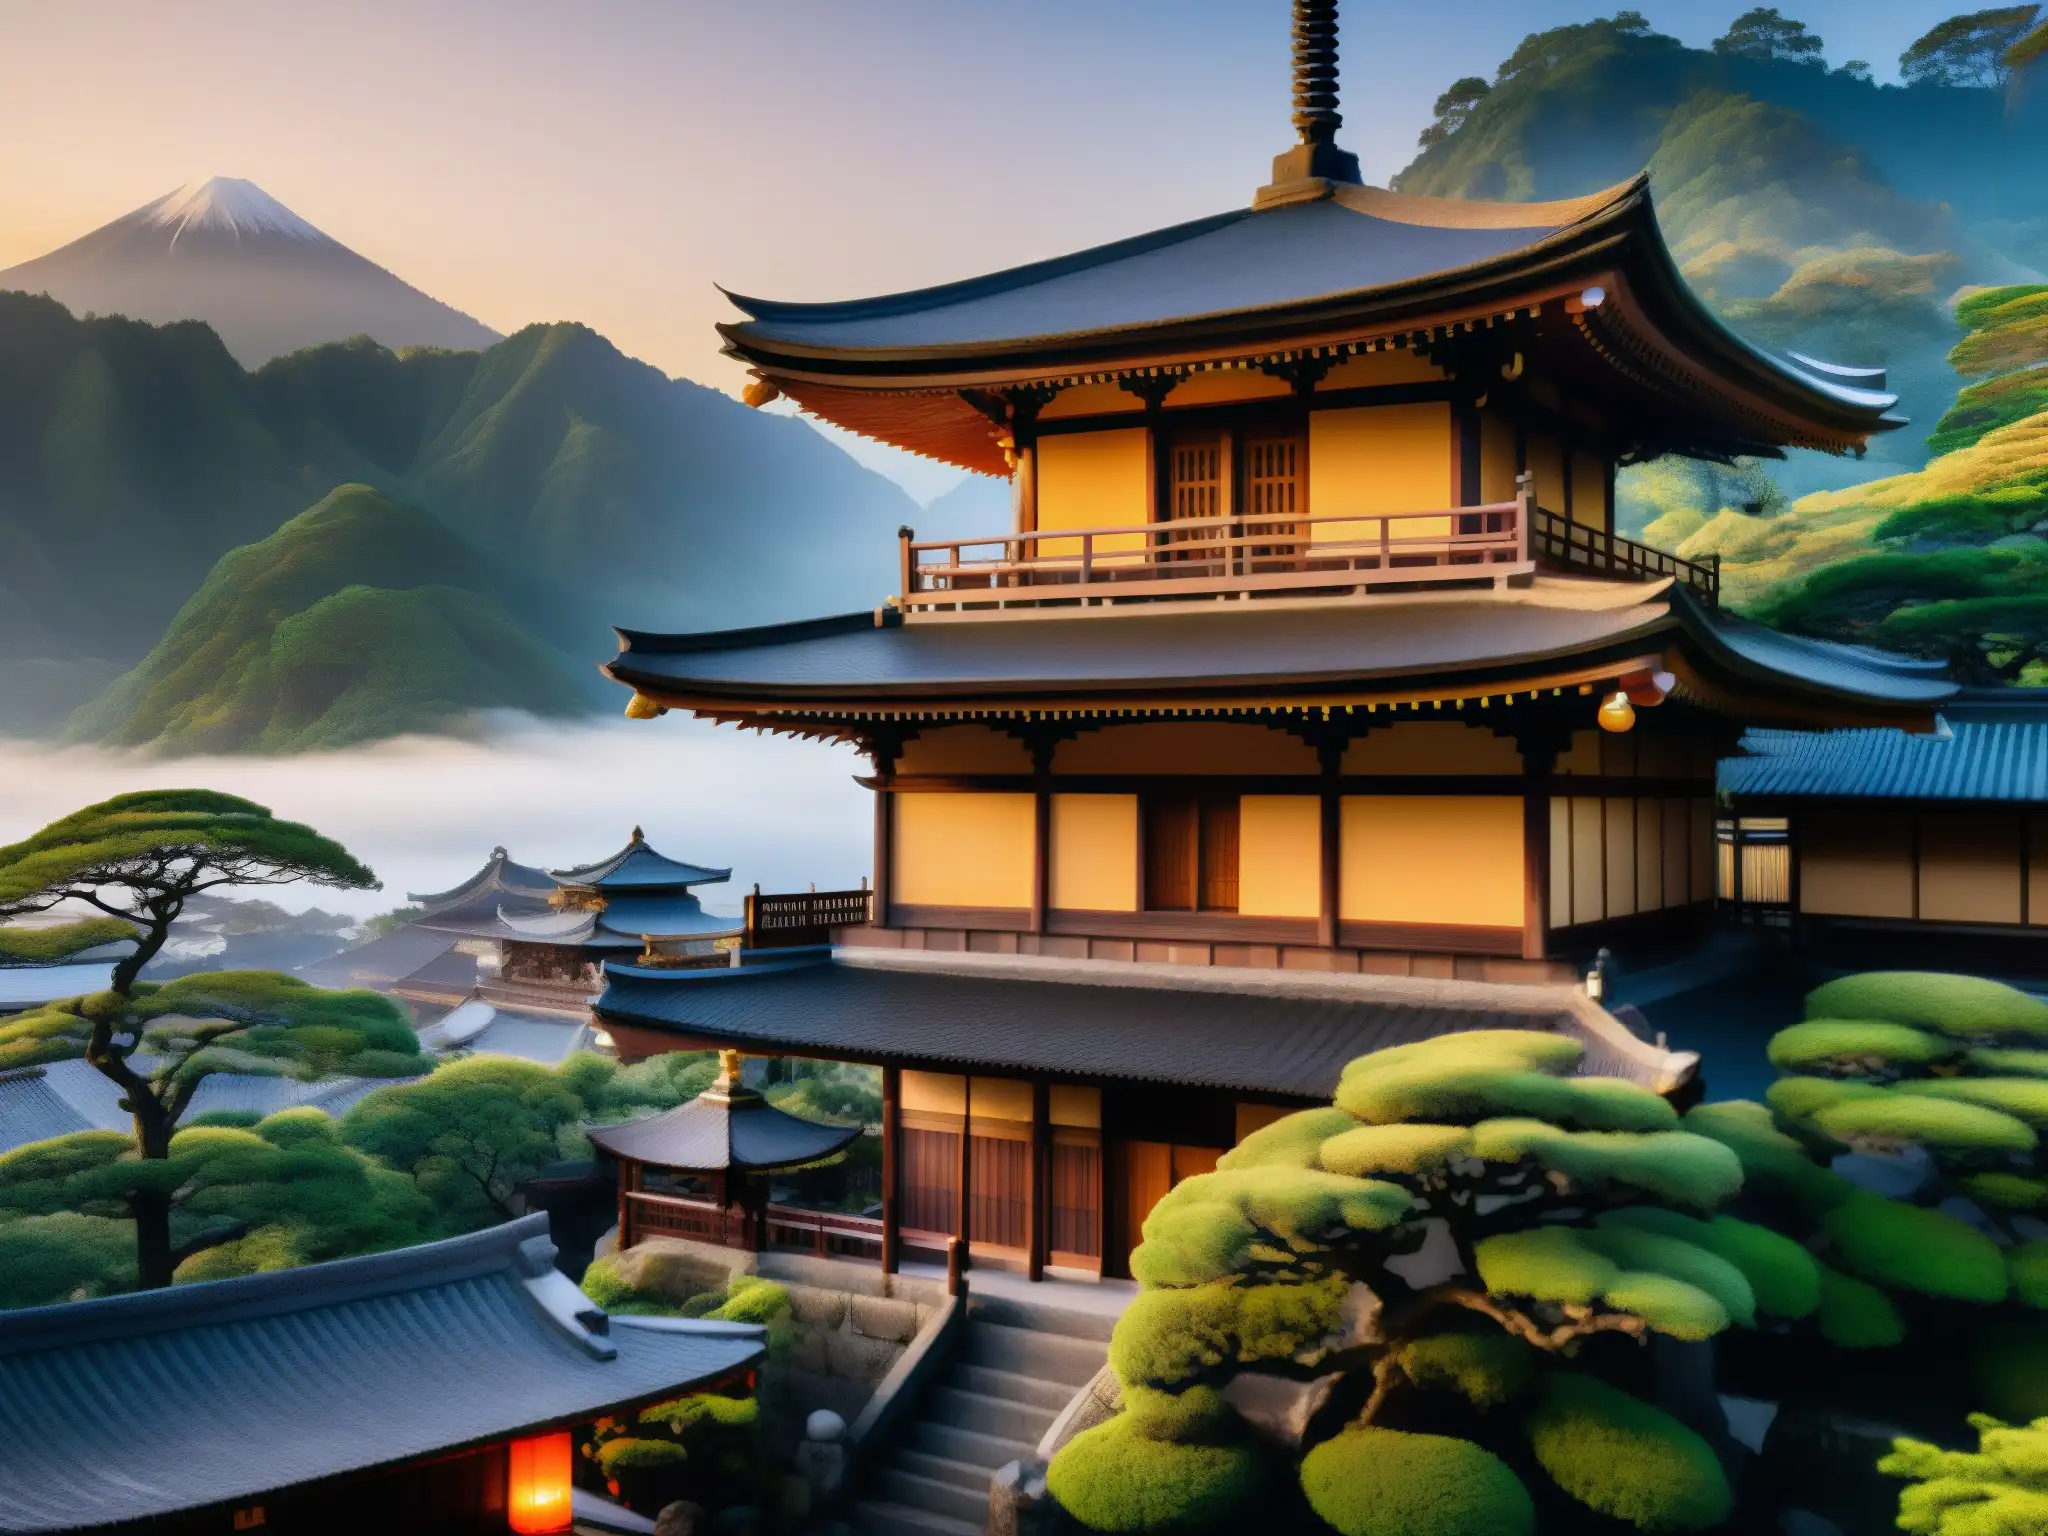 Un templo japonés antiguo al atardecer, con arquitectura de madera y faroles tradicionales que iluminan su entorno